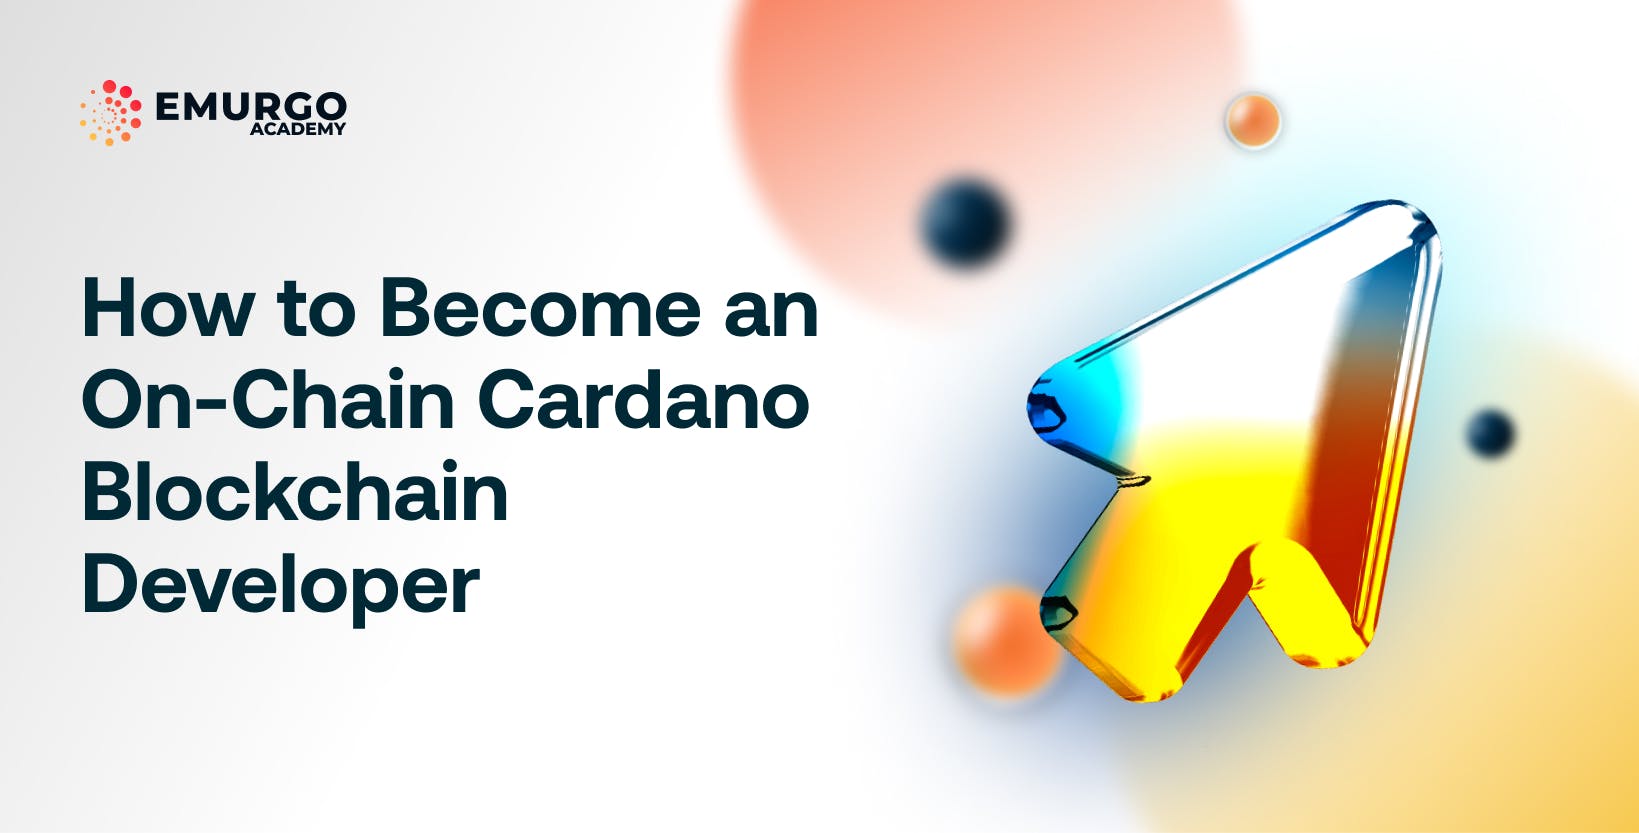 Construir um jogo do bicho na blockchain da Cardano resolveria os